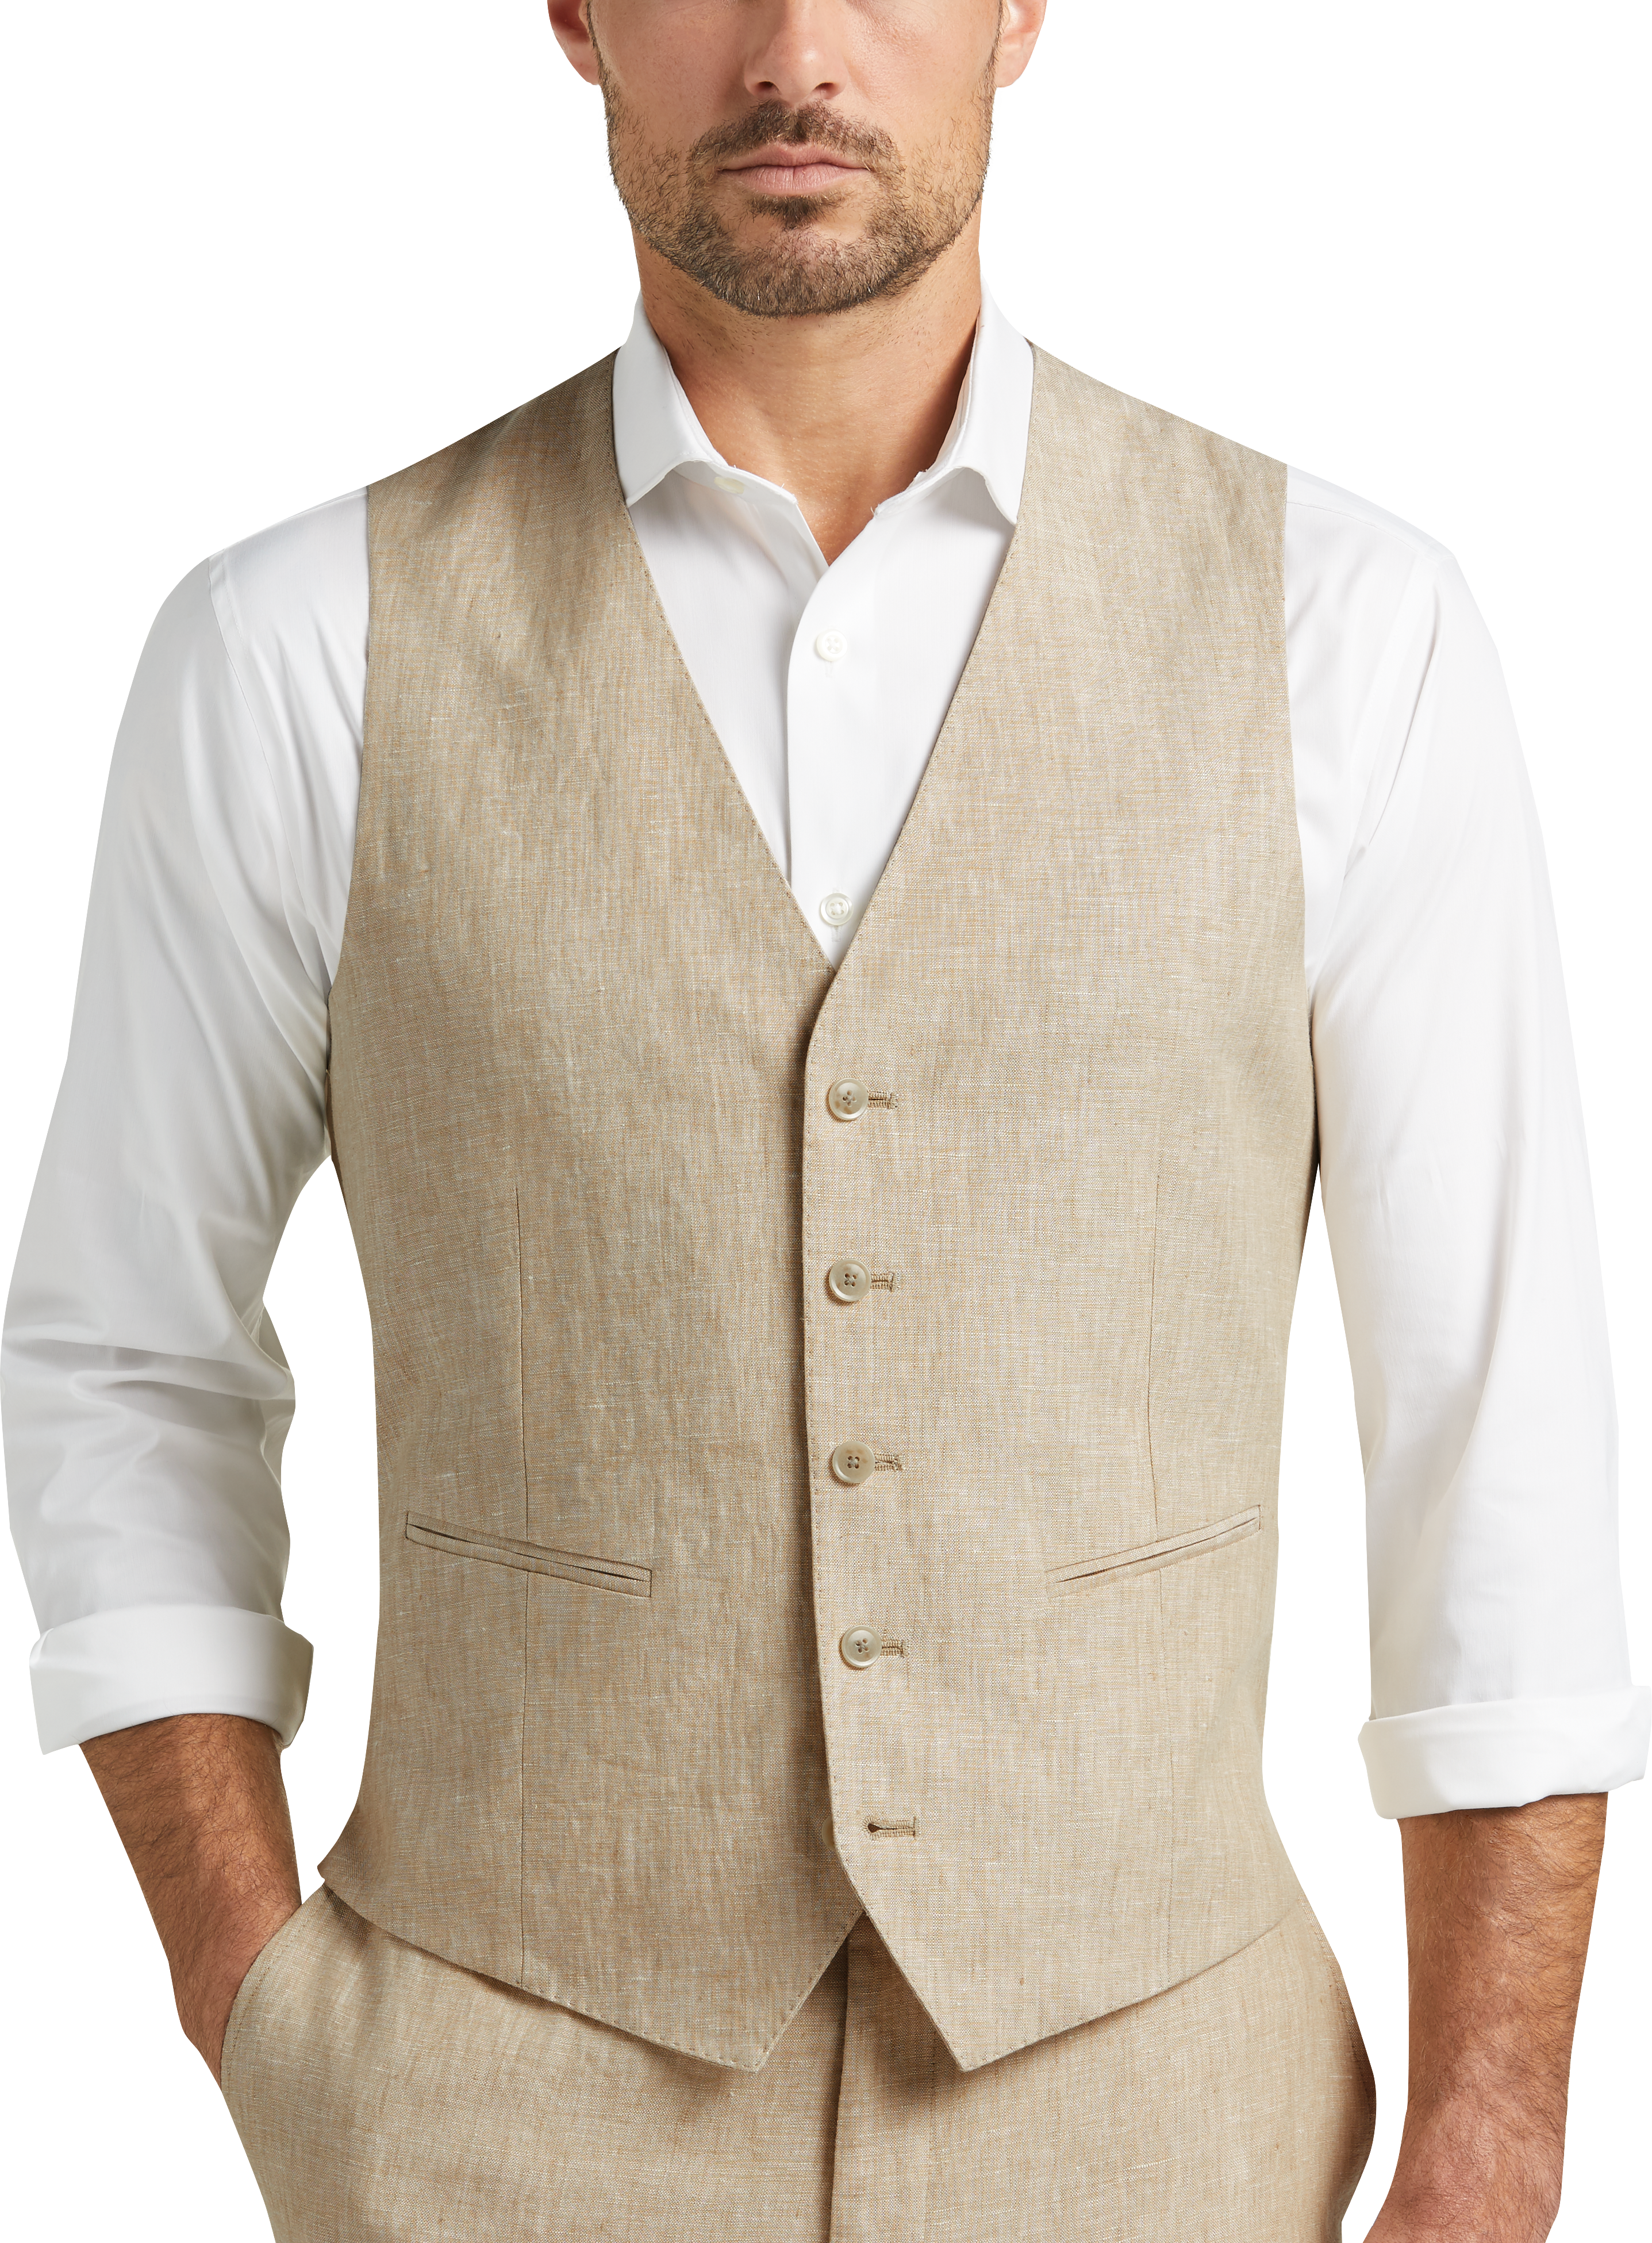 JOE Joseph Abboud Linen Slim Fit Suit Separates Vest, Tan